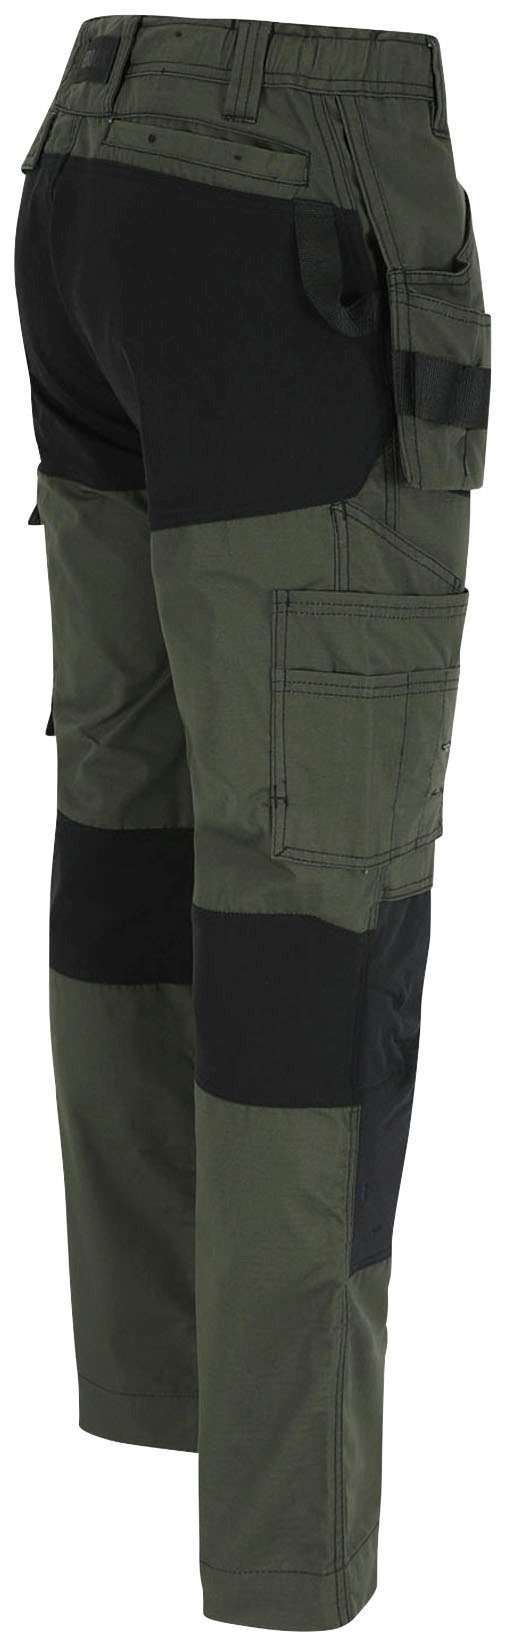 Nageltaschen mit 4-Wege-Stretch-Teilen festen Herock 2 Multi-Pocket-Hose Spector khaki Arbeitshose Hose und